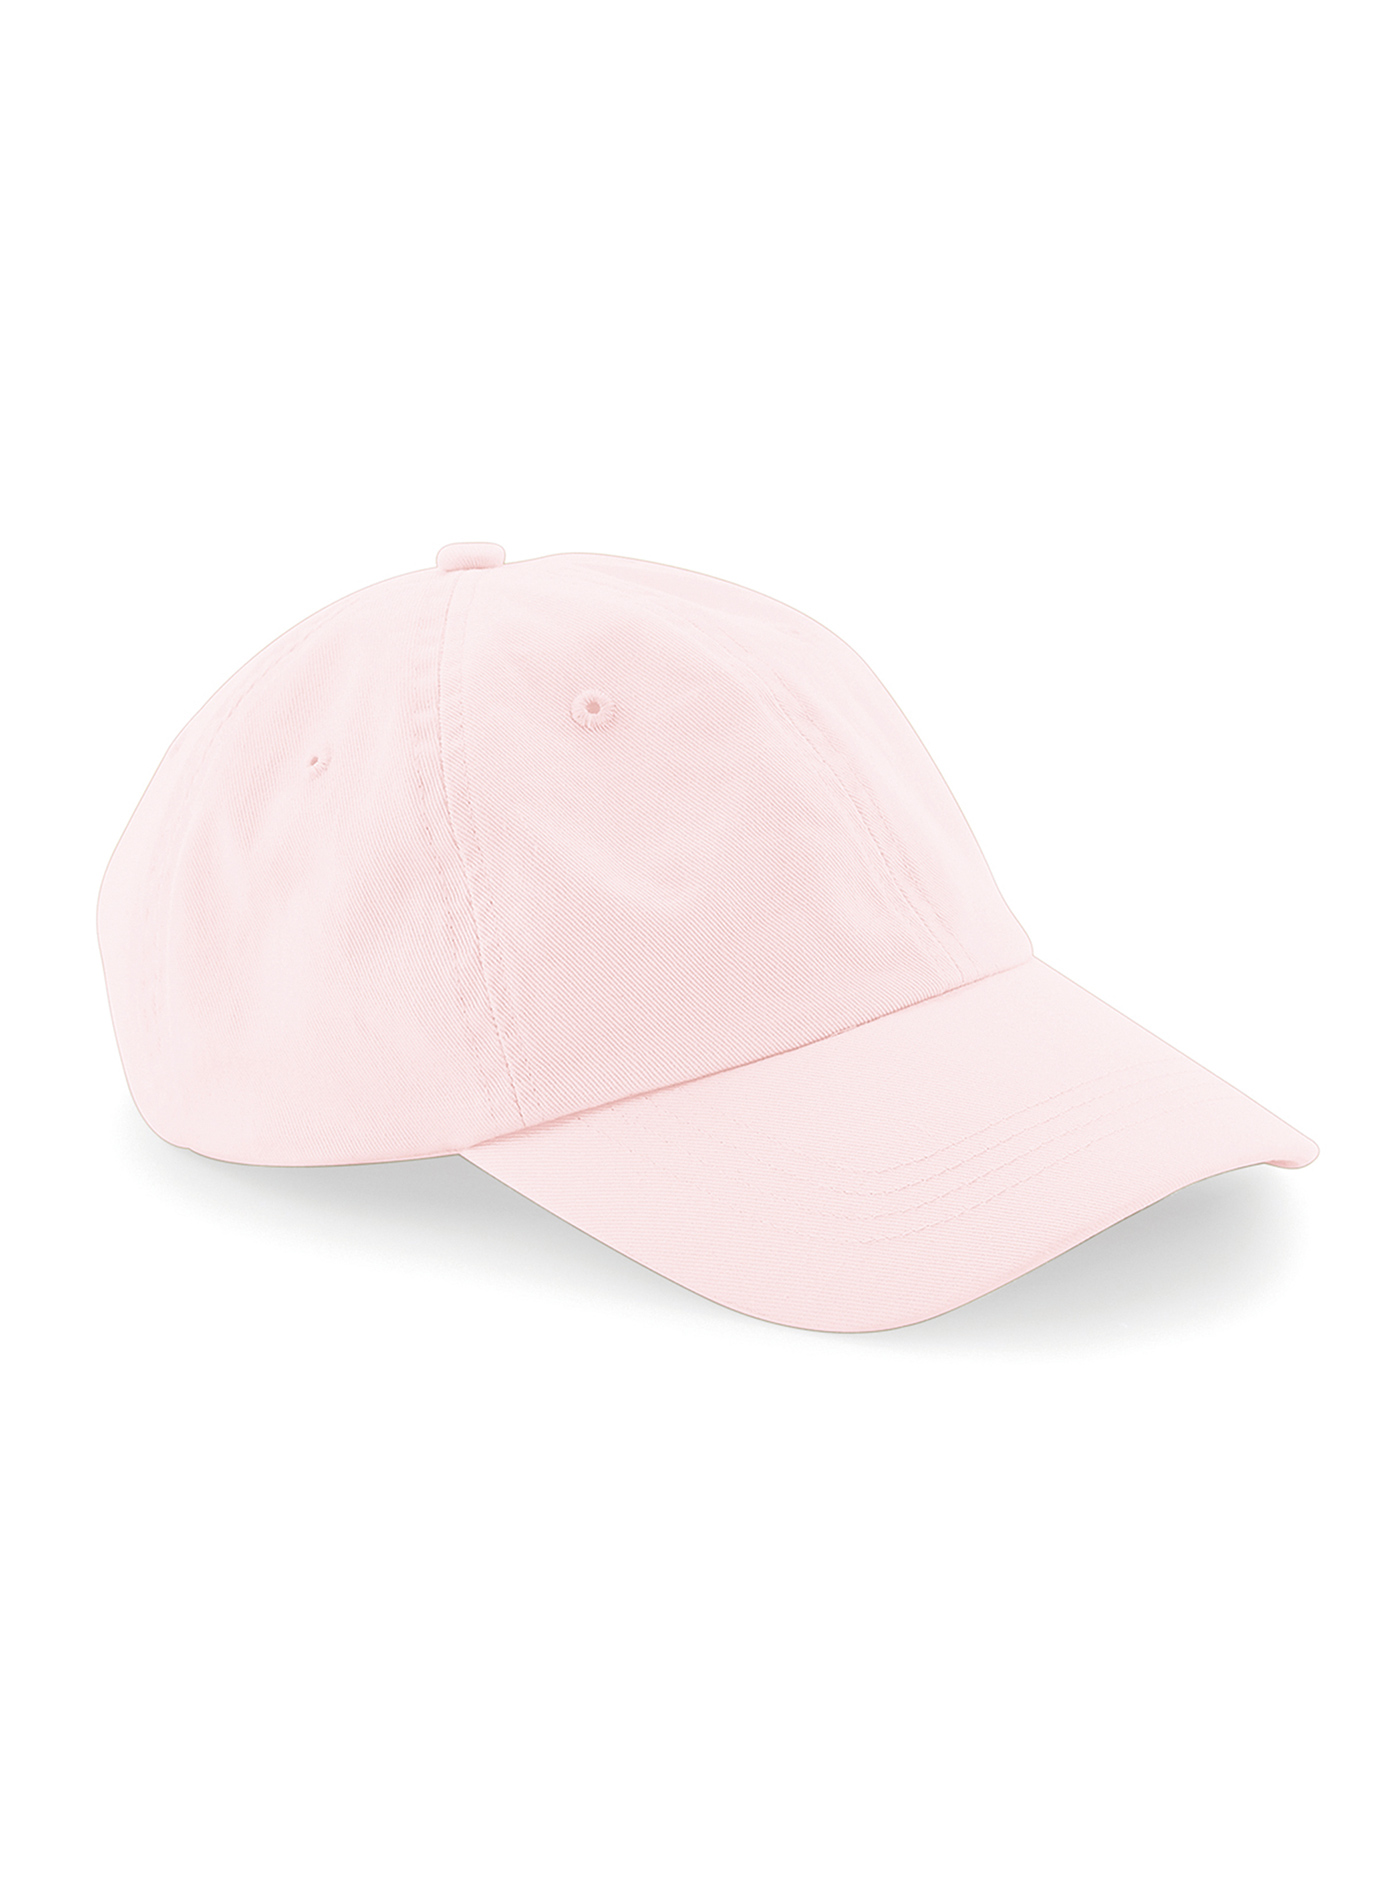 Čepice s nízkým profilem 6 dílná Beechfield - Bledě růžová univerzal